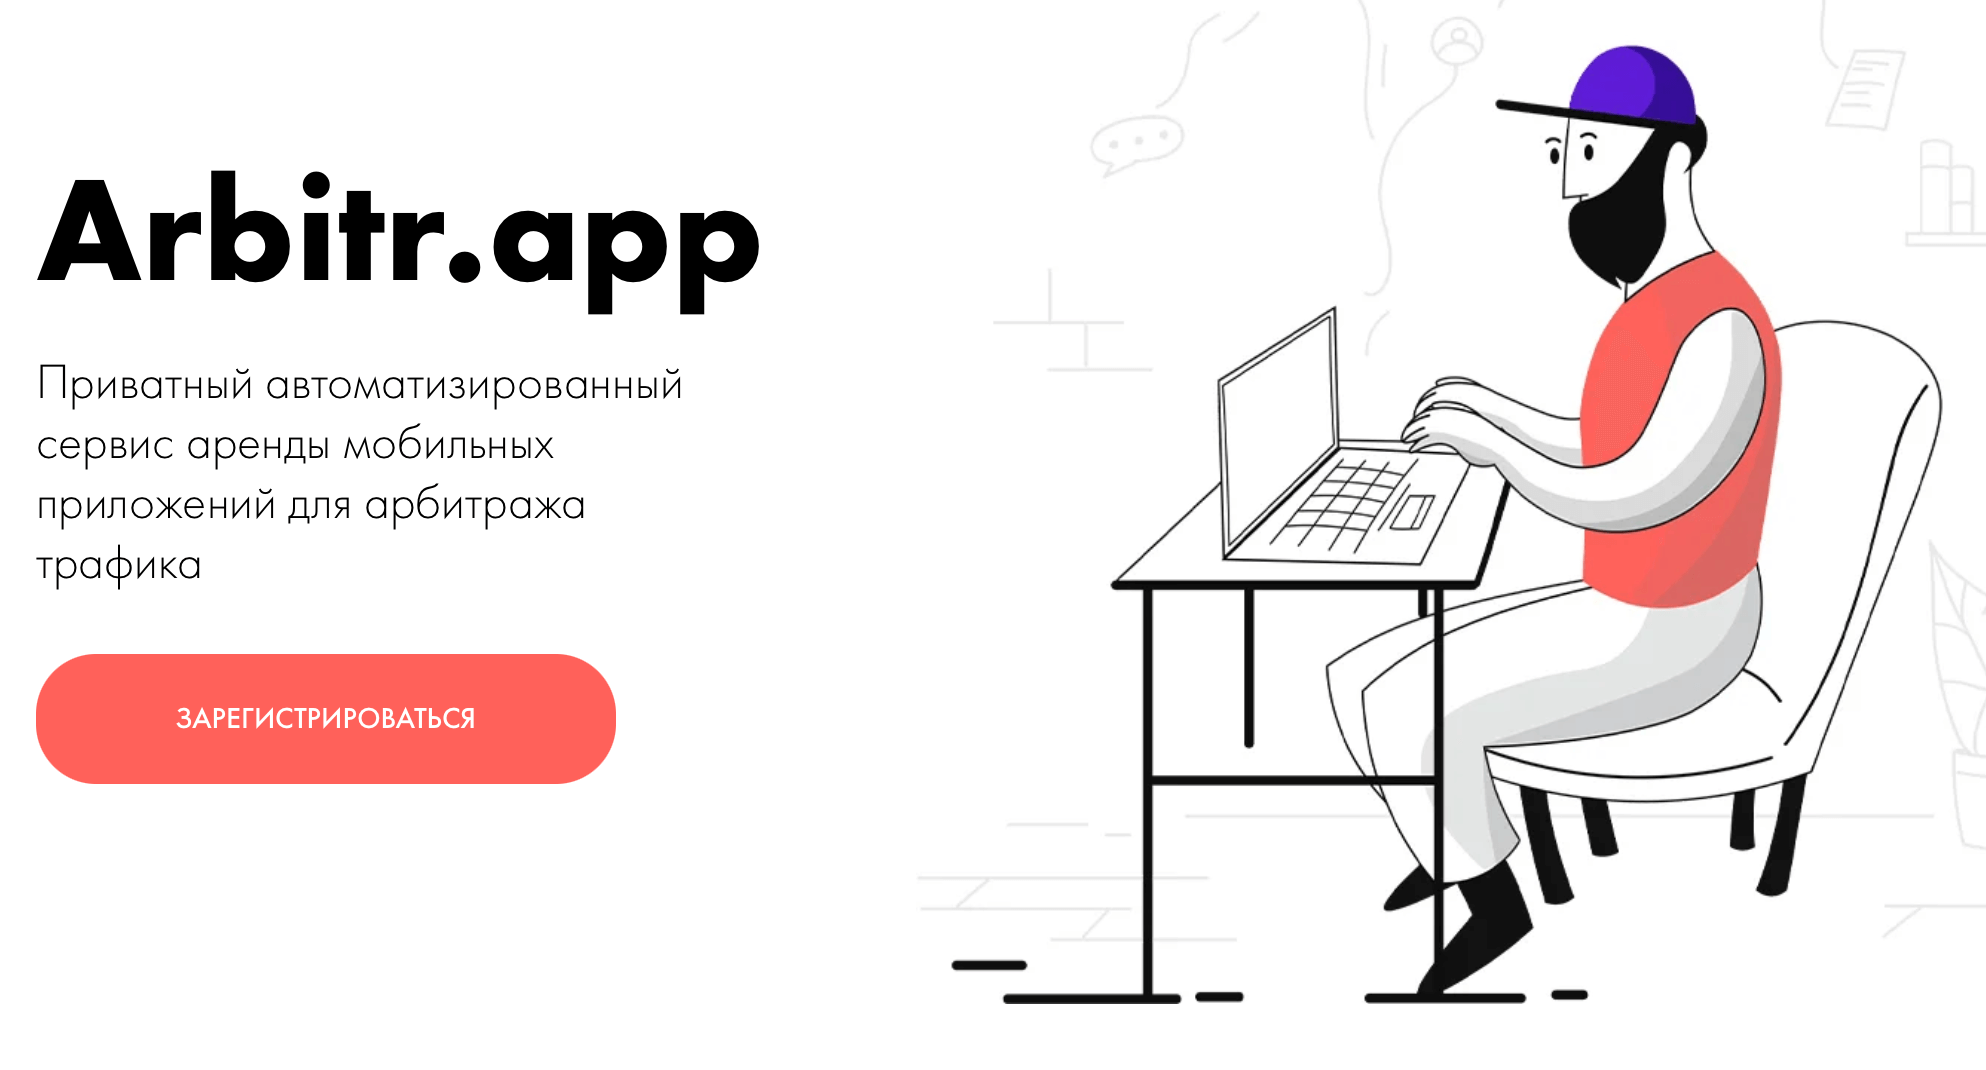 Arbittr.app аренда приложений